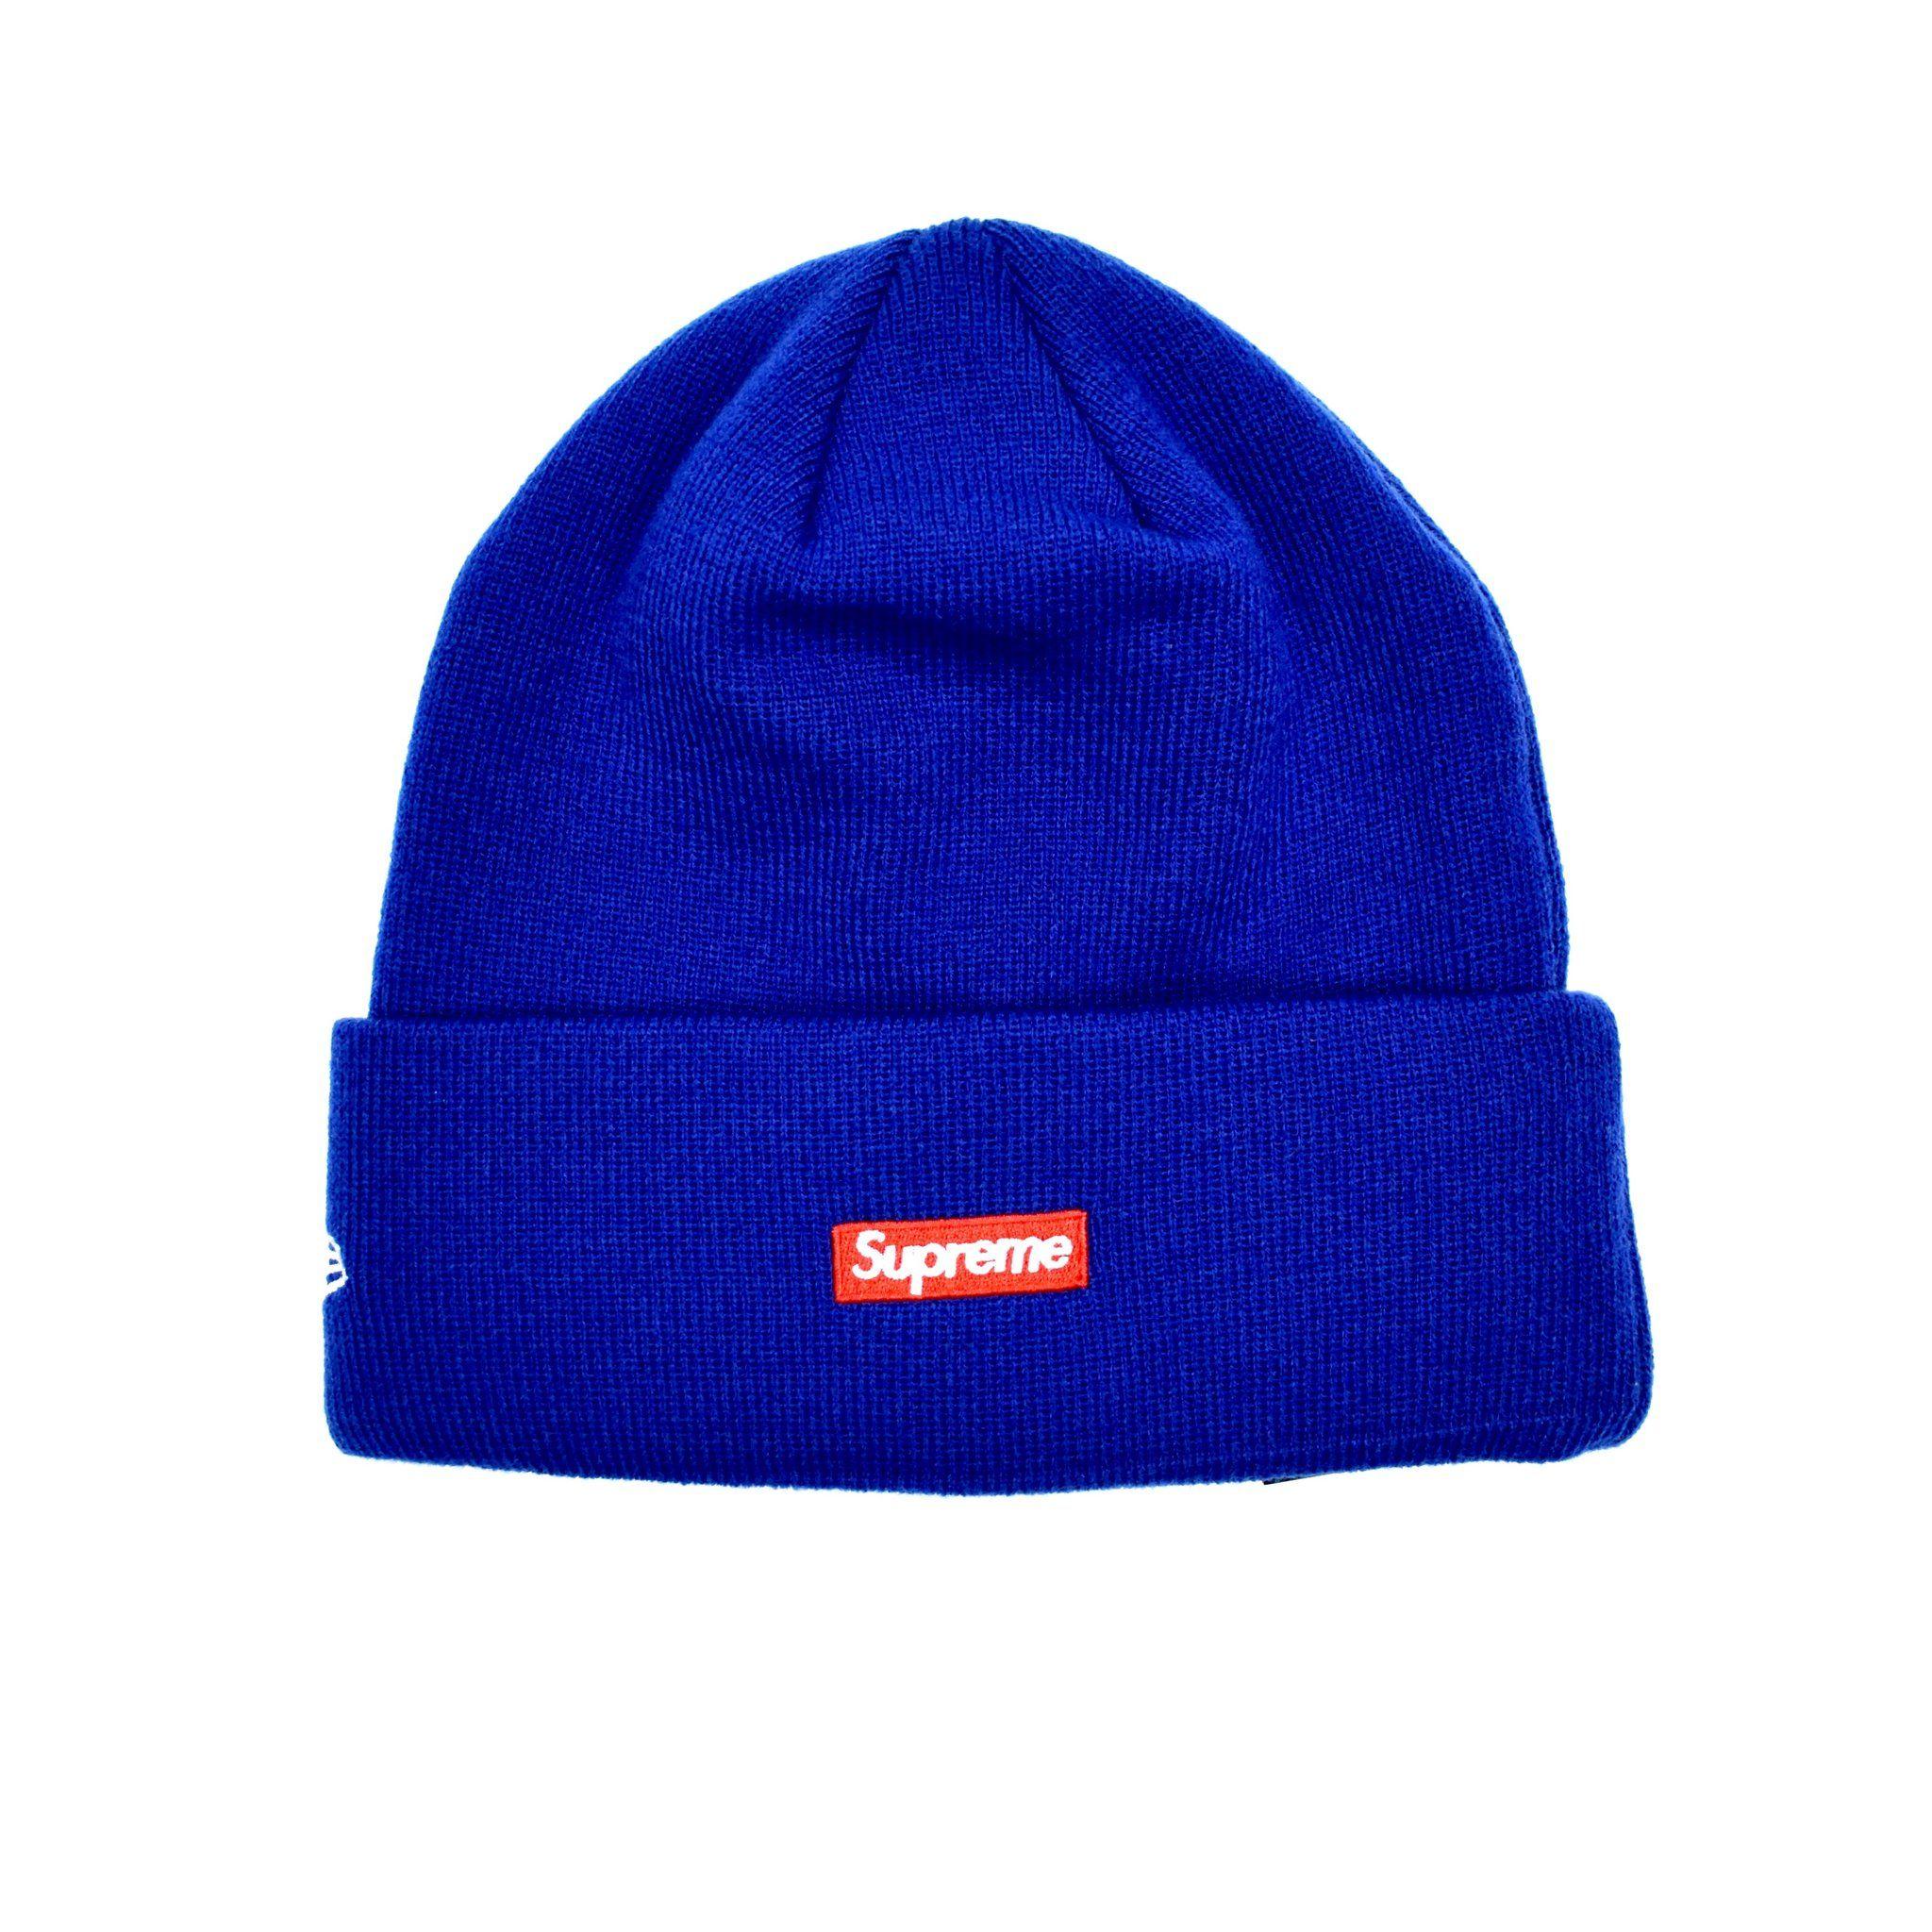 Royal Blue Supreme Logo - Supreme x New Era - Royal Blue 'S' Logo / Box Logo Beanie Knit Hat ...